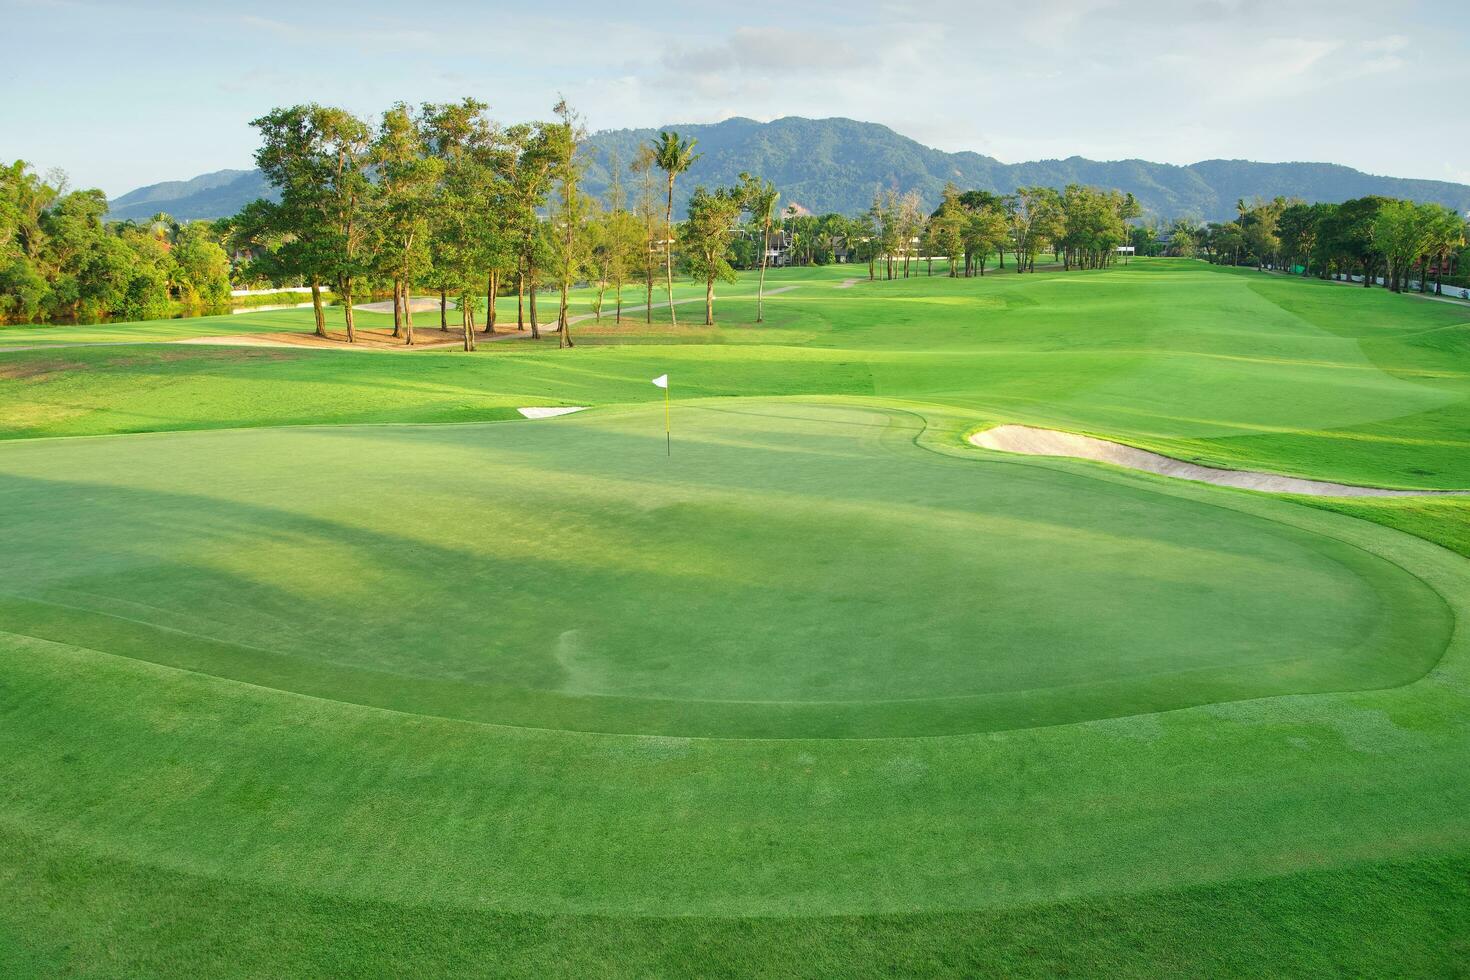 bellissimo golf corso Visualizza, golf corso con bellissimo mettendo verde, fresco verde erba su il golf corso foto